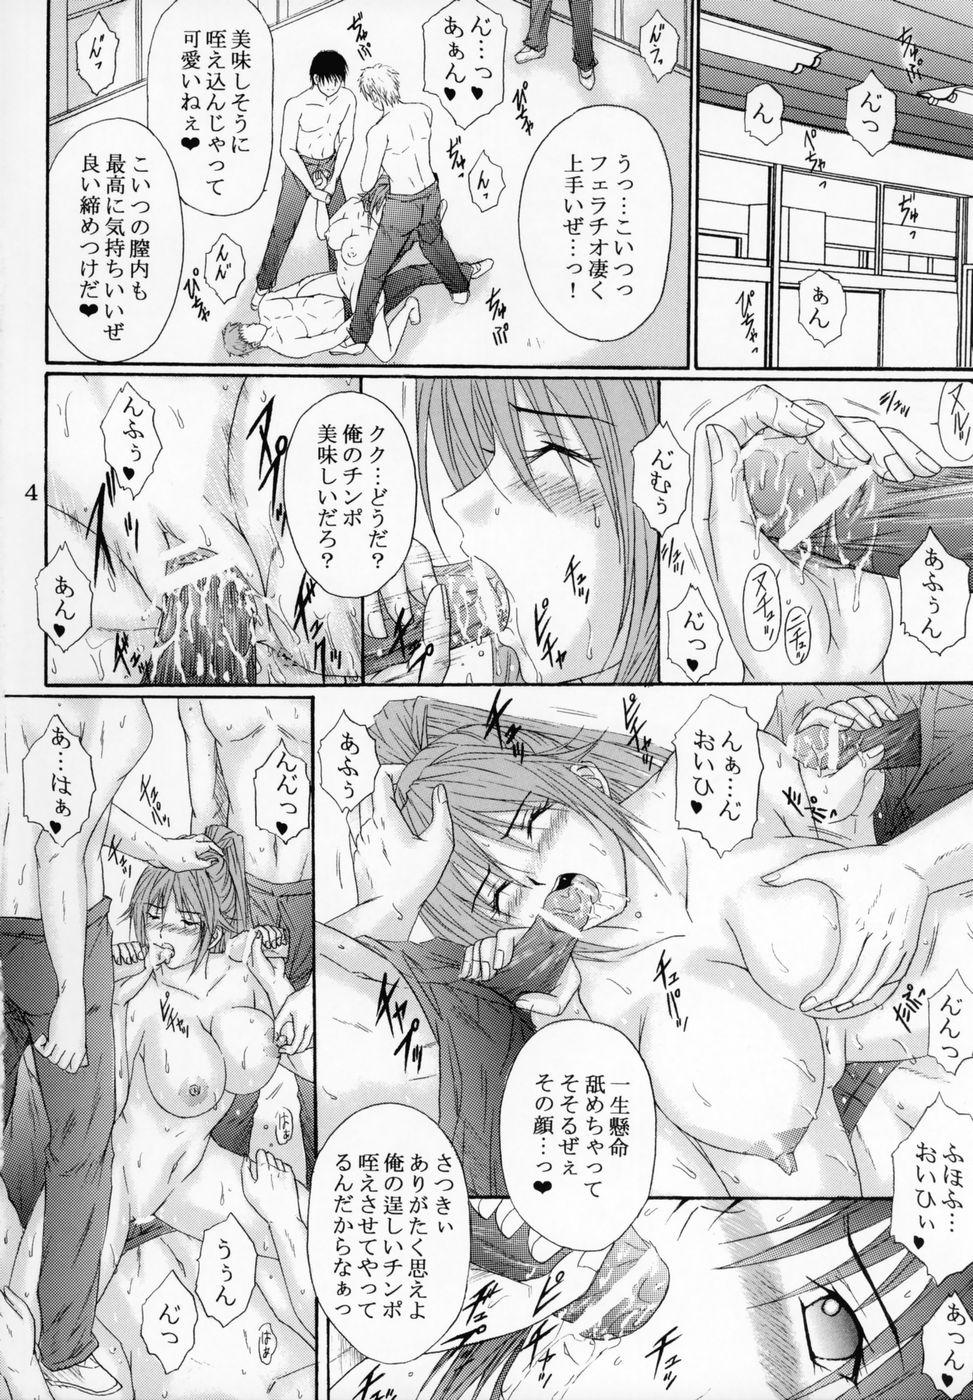 Awesome Ryoujoku Rensa 7 - Ichigo 100 Juicy - Page 3